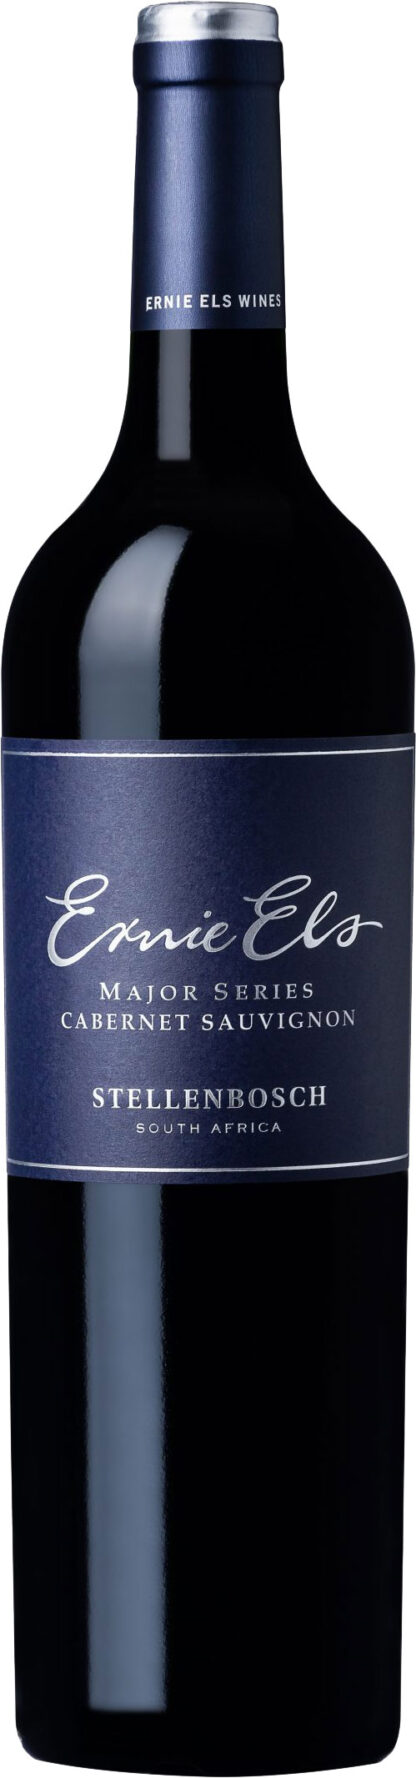 Ernie Els Wines - Major Series Cabernet Sauvignon 2017 75cl Bottle